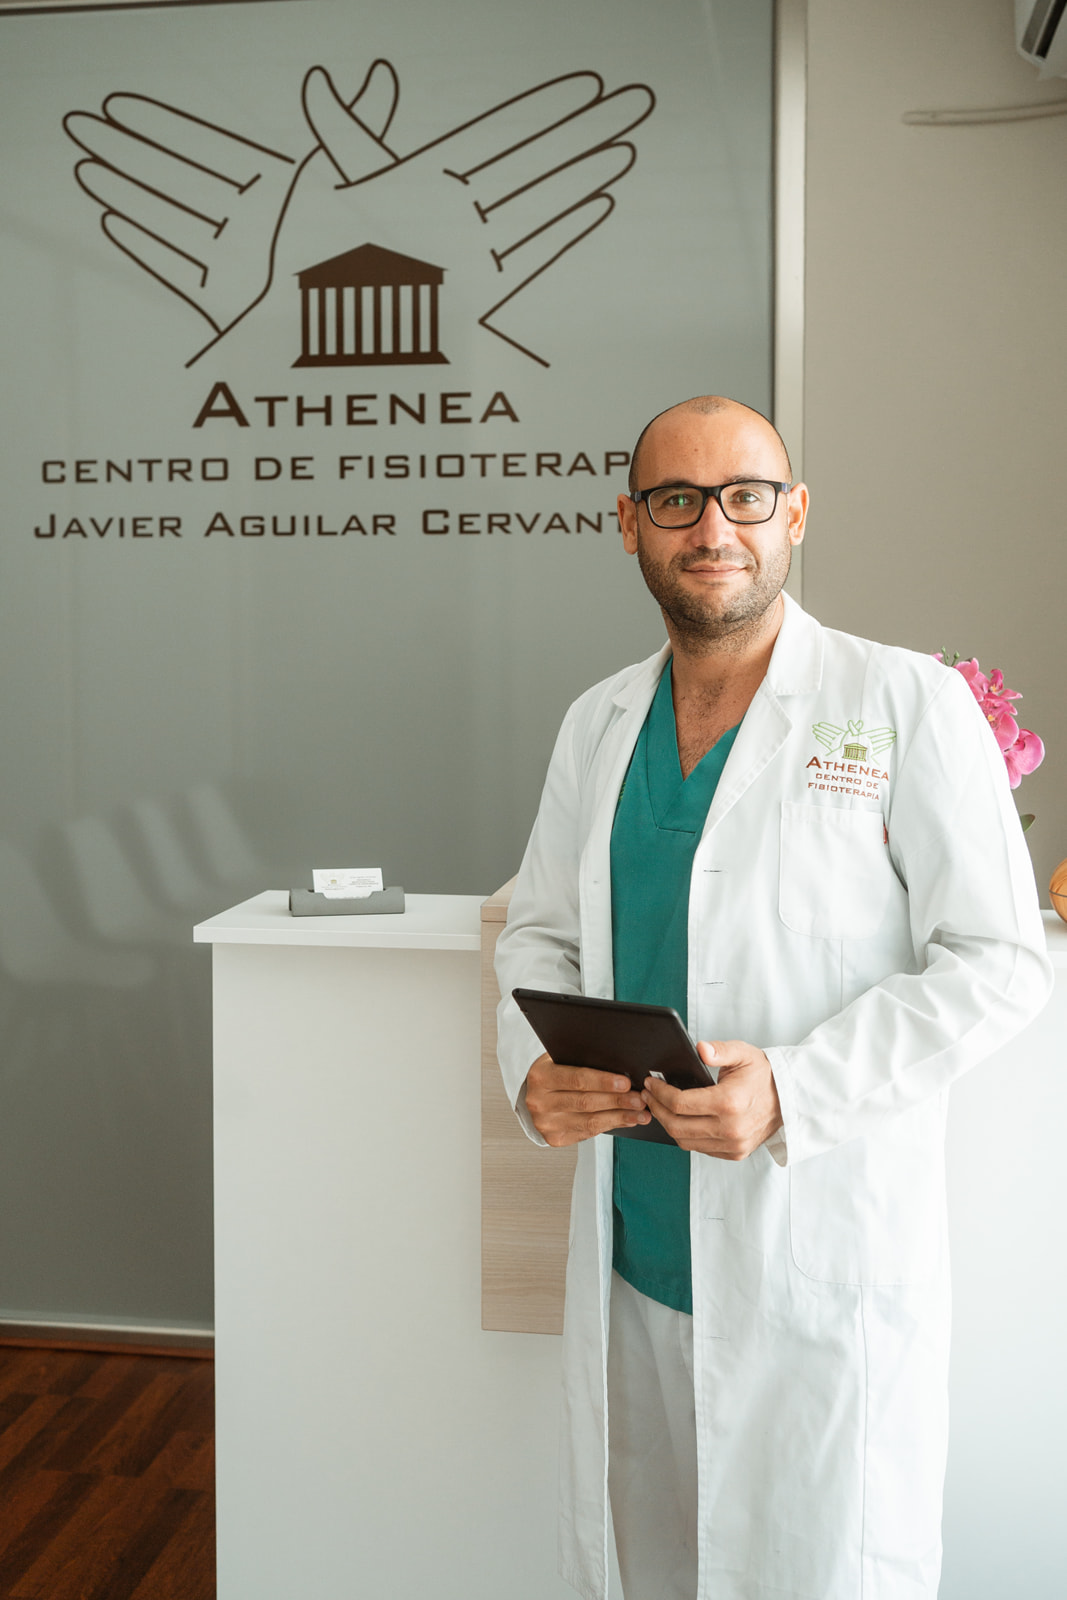 Clinica Athenea Javier Aguilar